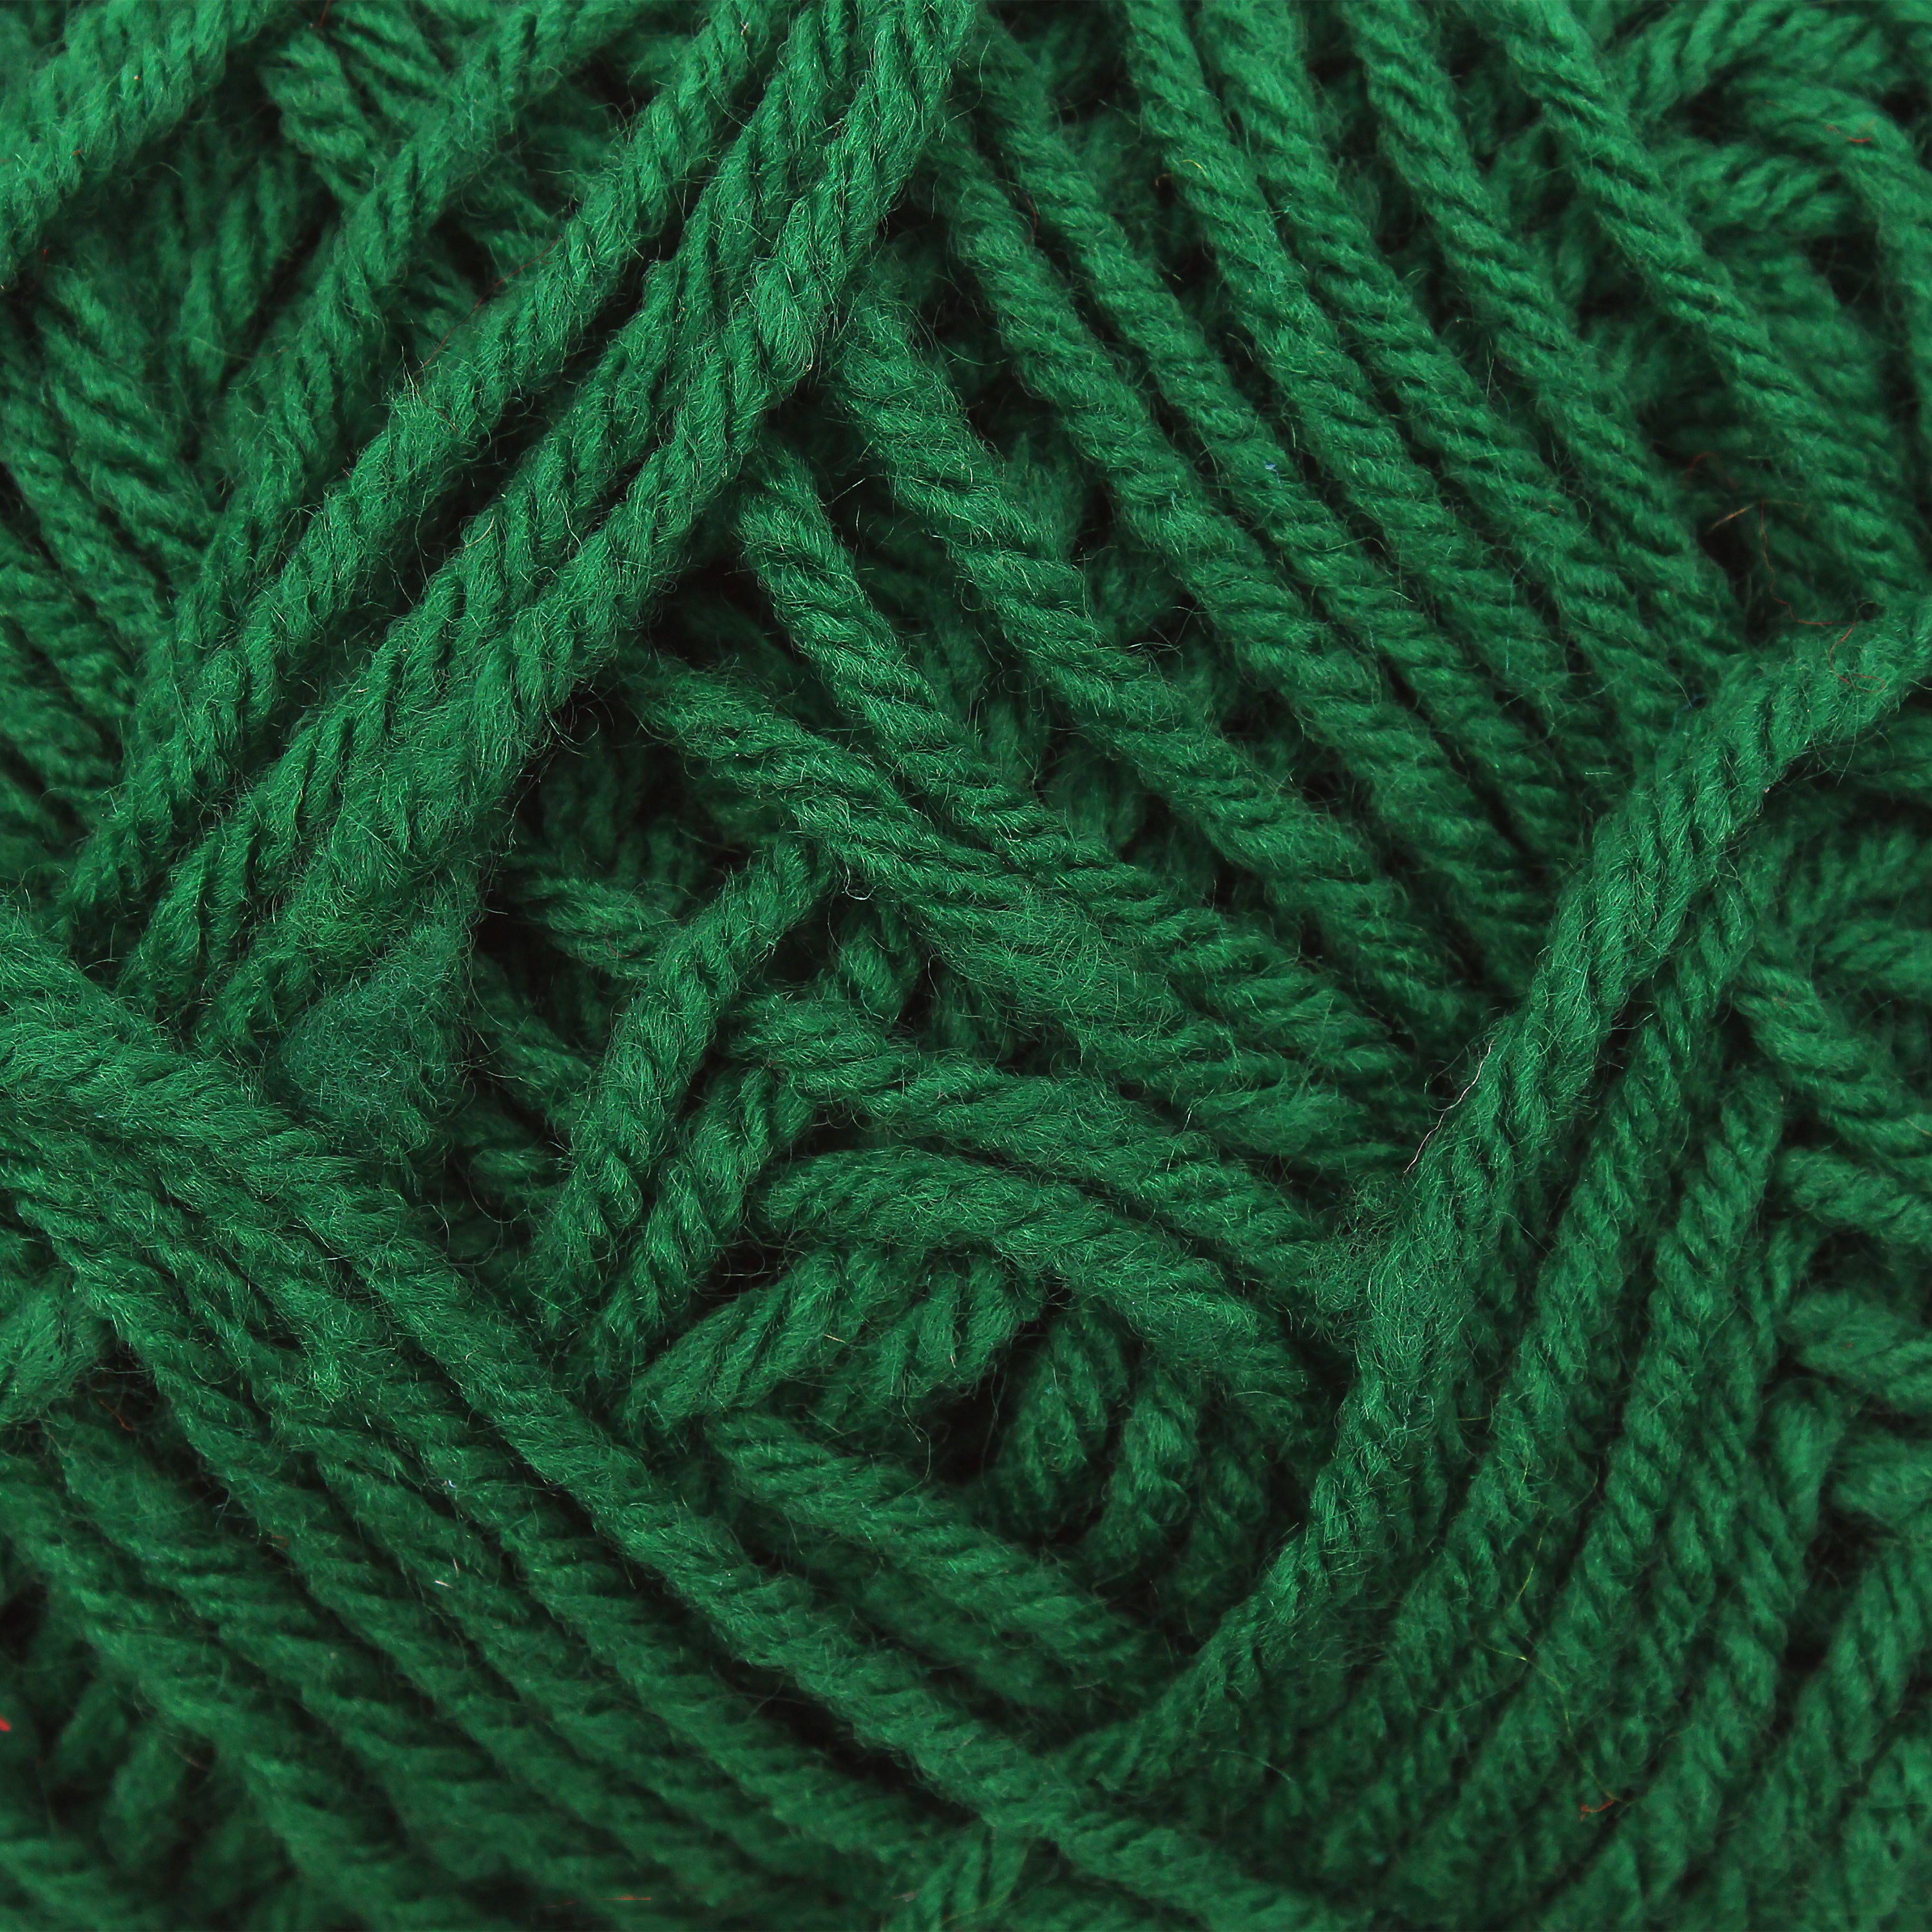 Wool Yarn Dk Green 12G